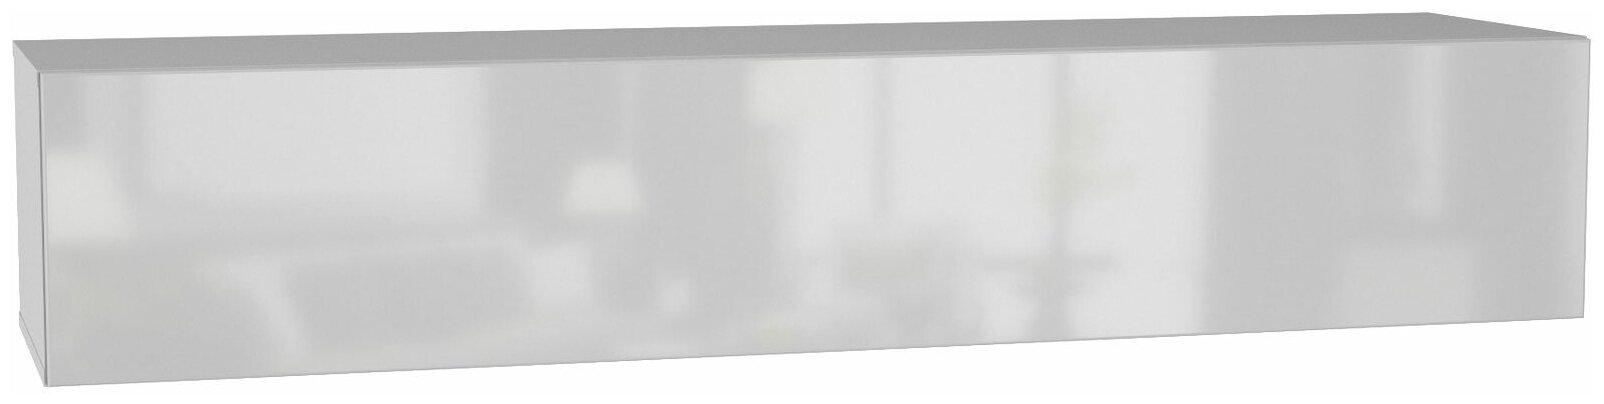 ТВ-тумба Первый Мебельный Поинт Белый / Белый глянец 1600 мм